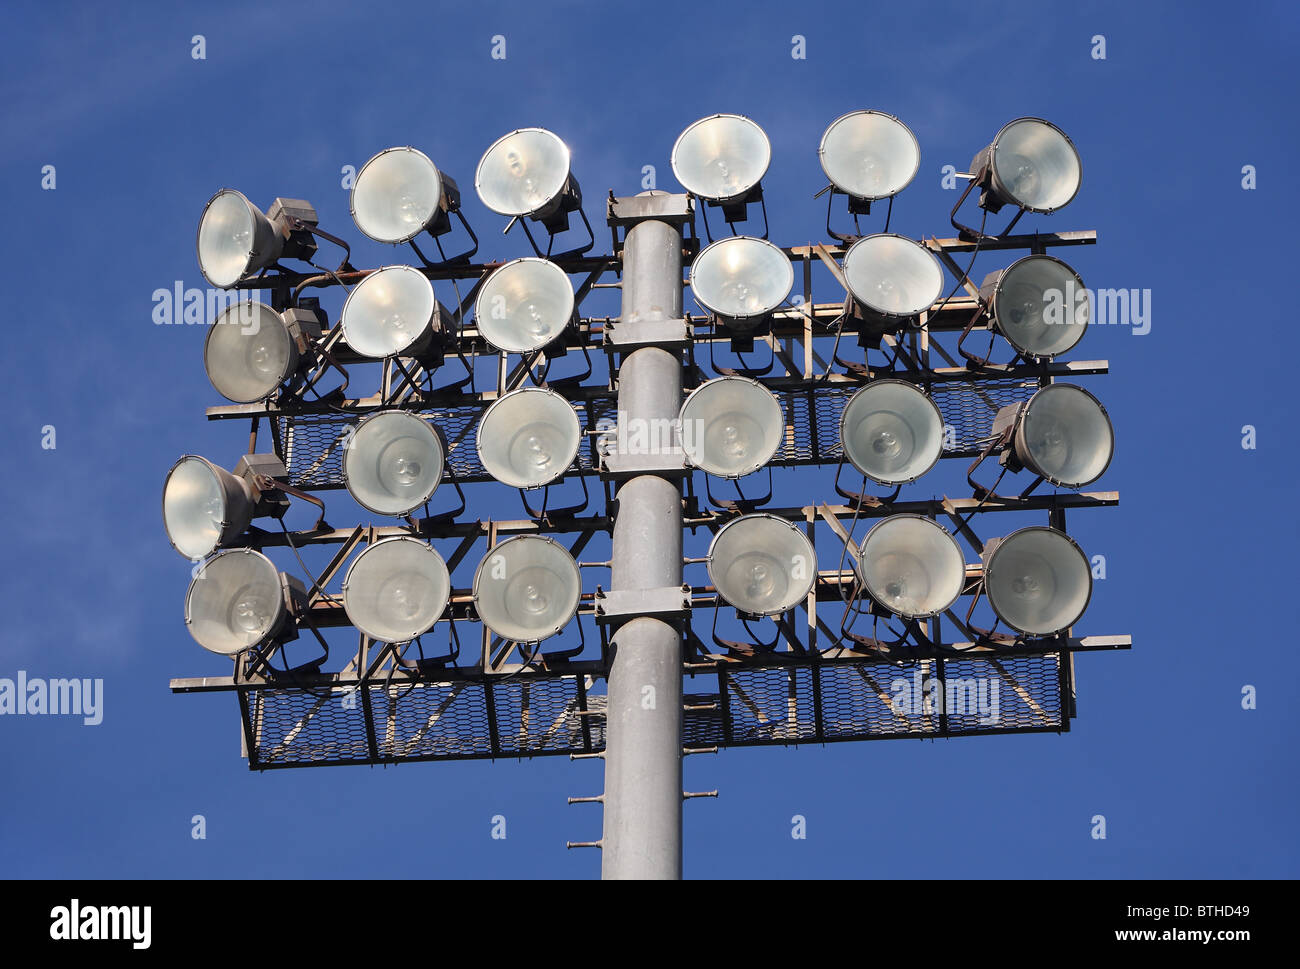 Soccer or Baseball Floodlights against a blue sky Stock Photo